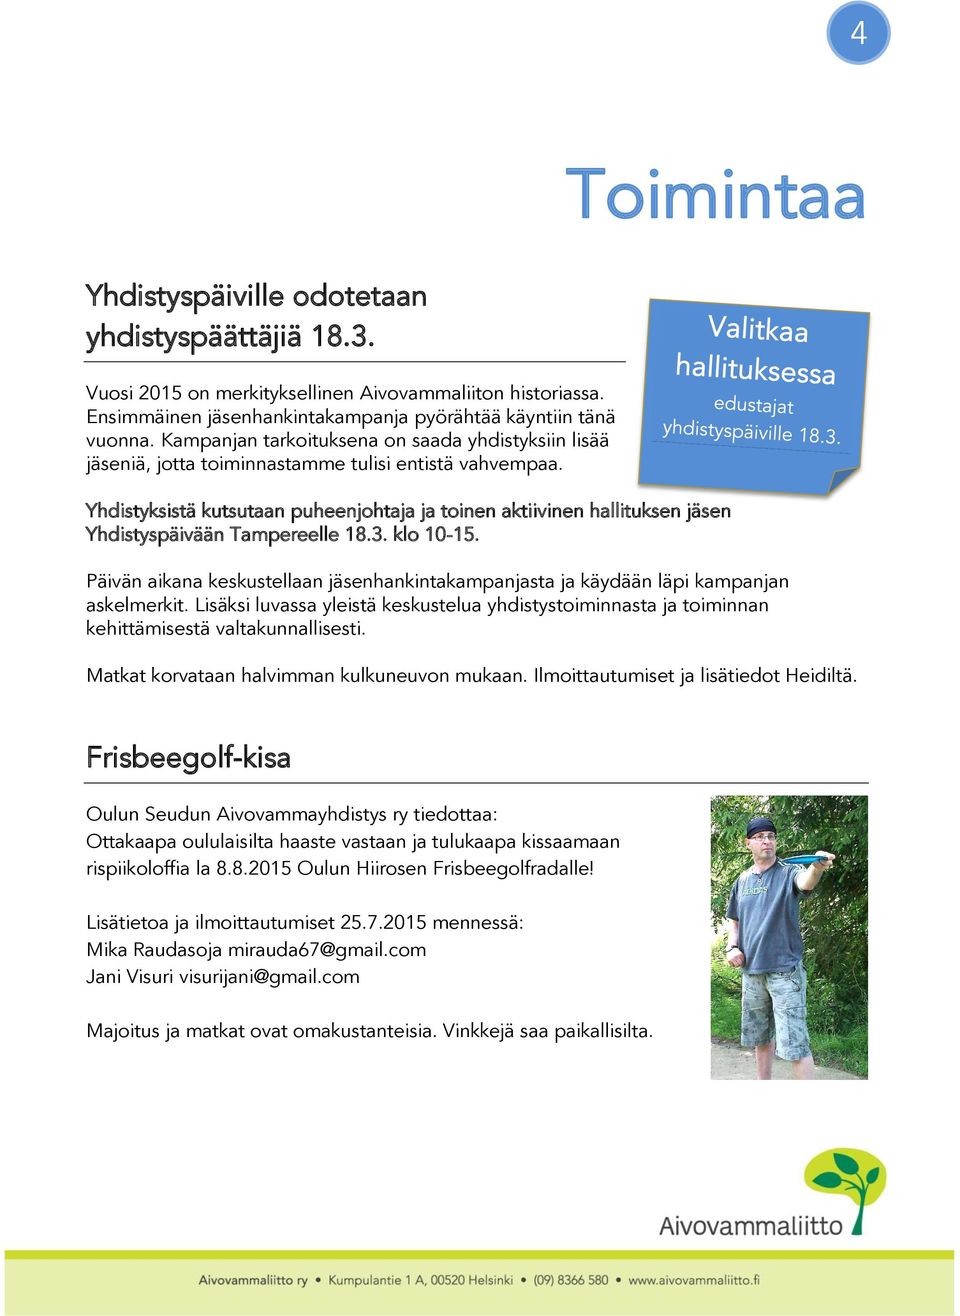 Yhdistyksistä kutsutaan puheenjohtaja ja toinen aktiivinen hallituksen jäsen Yhdistyspäivään Tampereelle 18.3. klo 10-15.